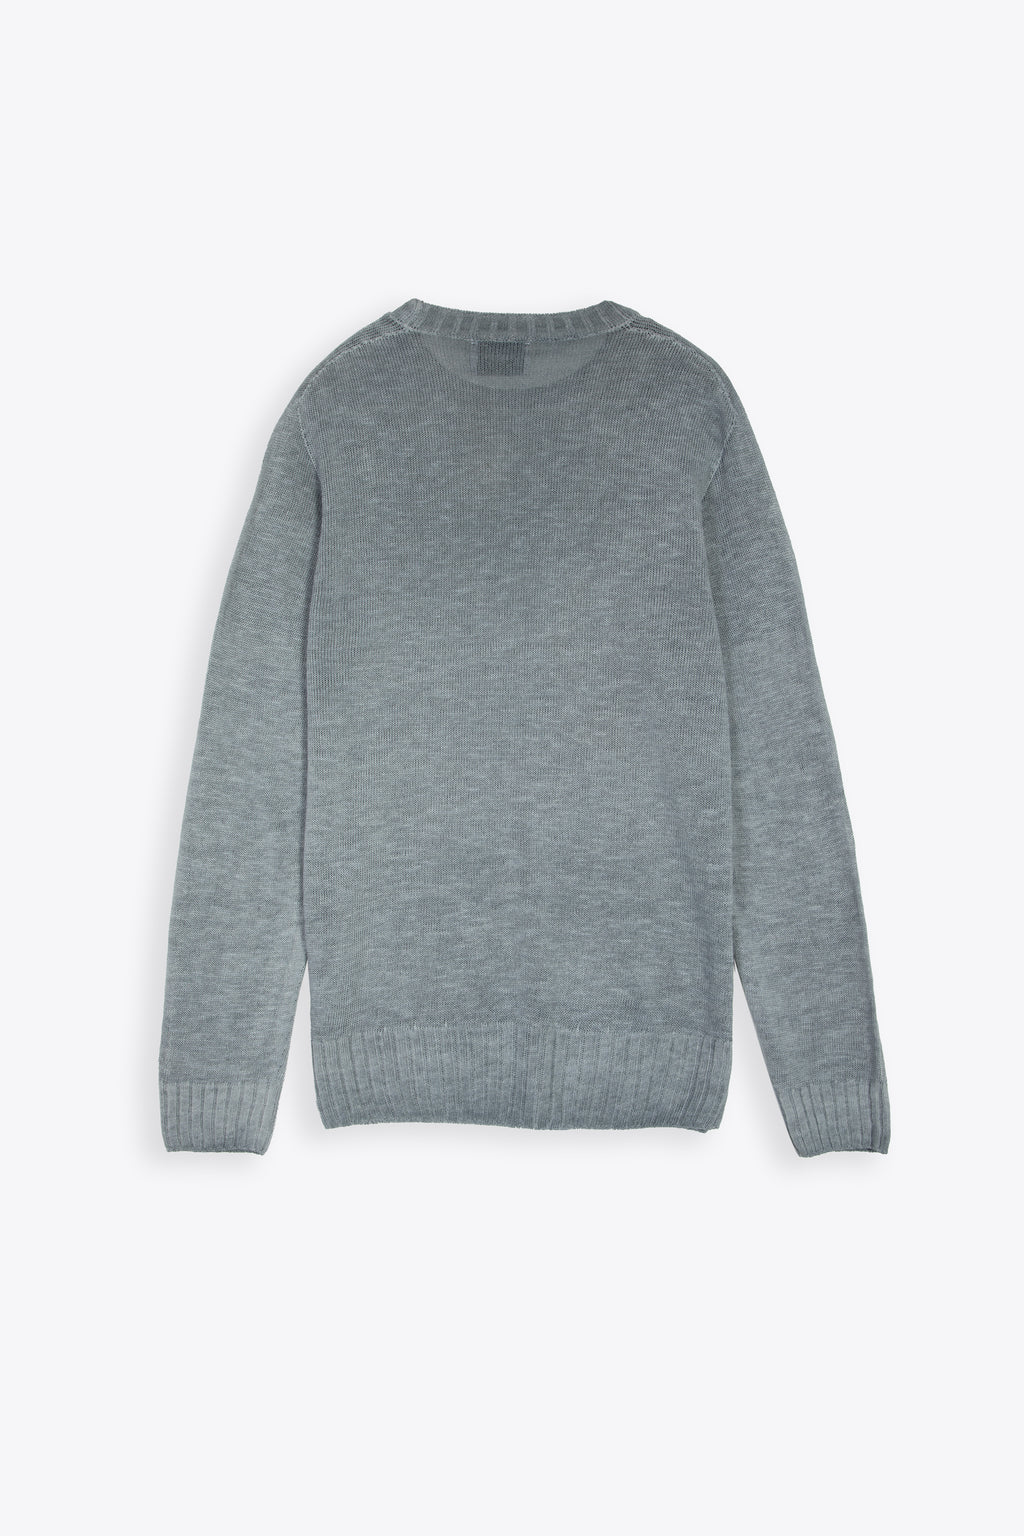 alt-image__Light-grey-linen-blend-sweater